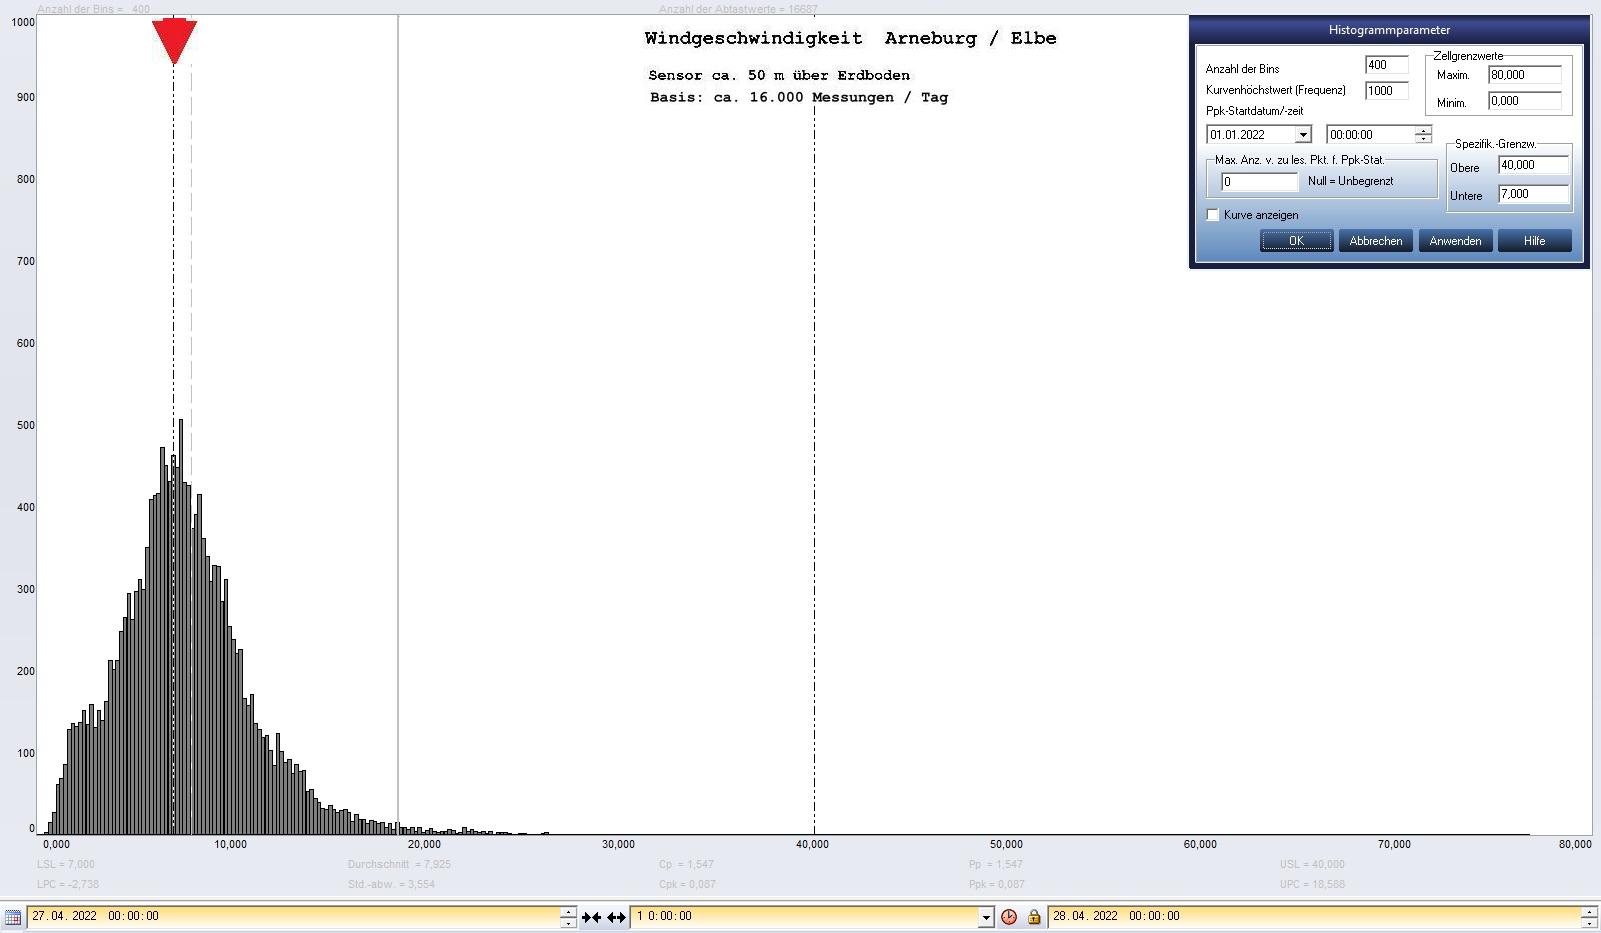 Arneburg Tages-Histogramm Winddaten, 27.04.2022
  Histogramm, Sensor auf Gebude, ca. 50 m ber Erdboden, Basis: 5s-Aufzeichnung